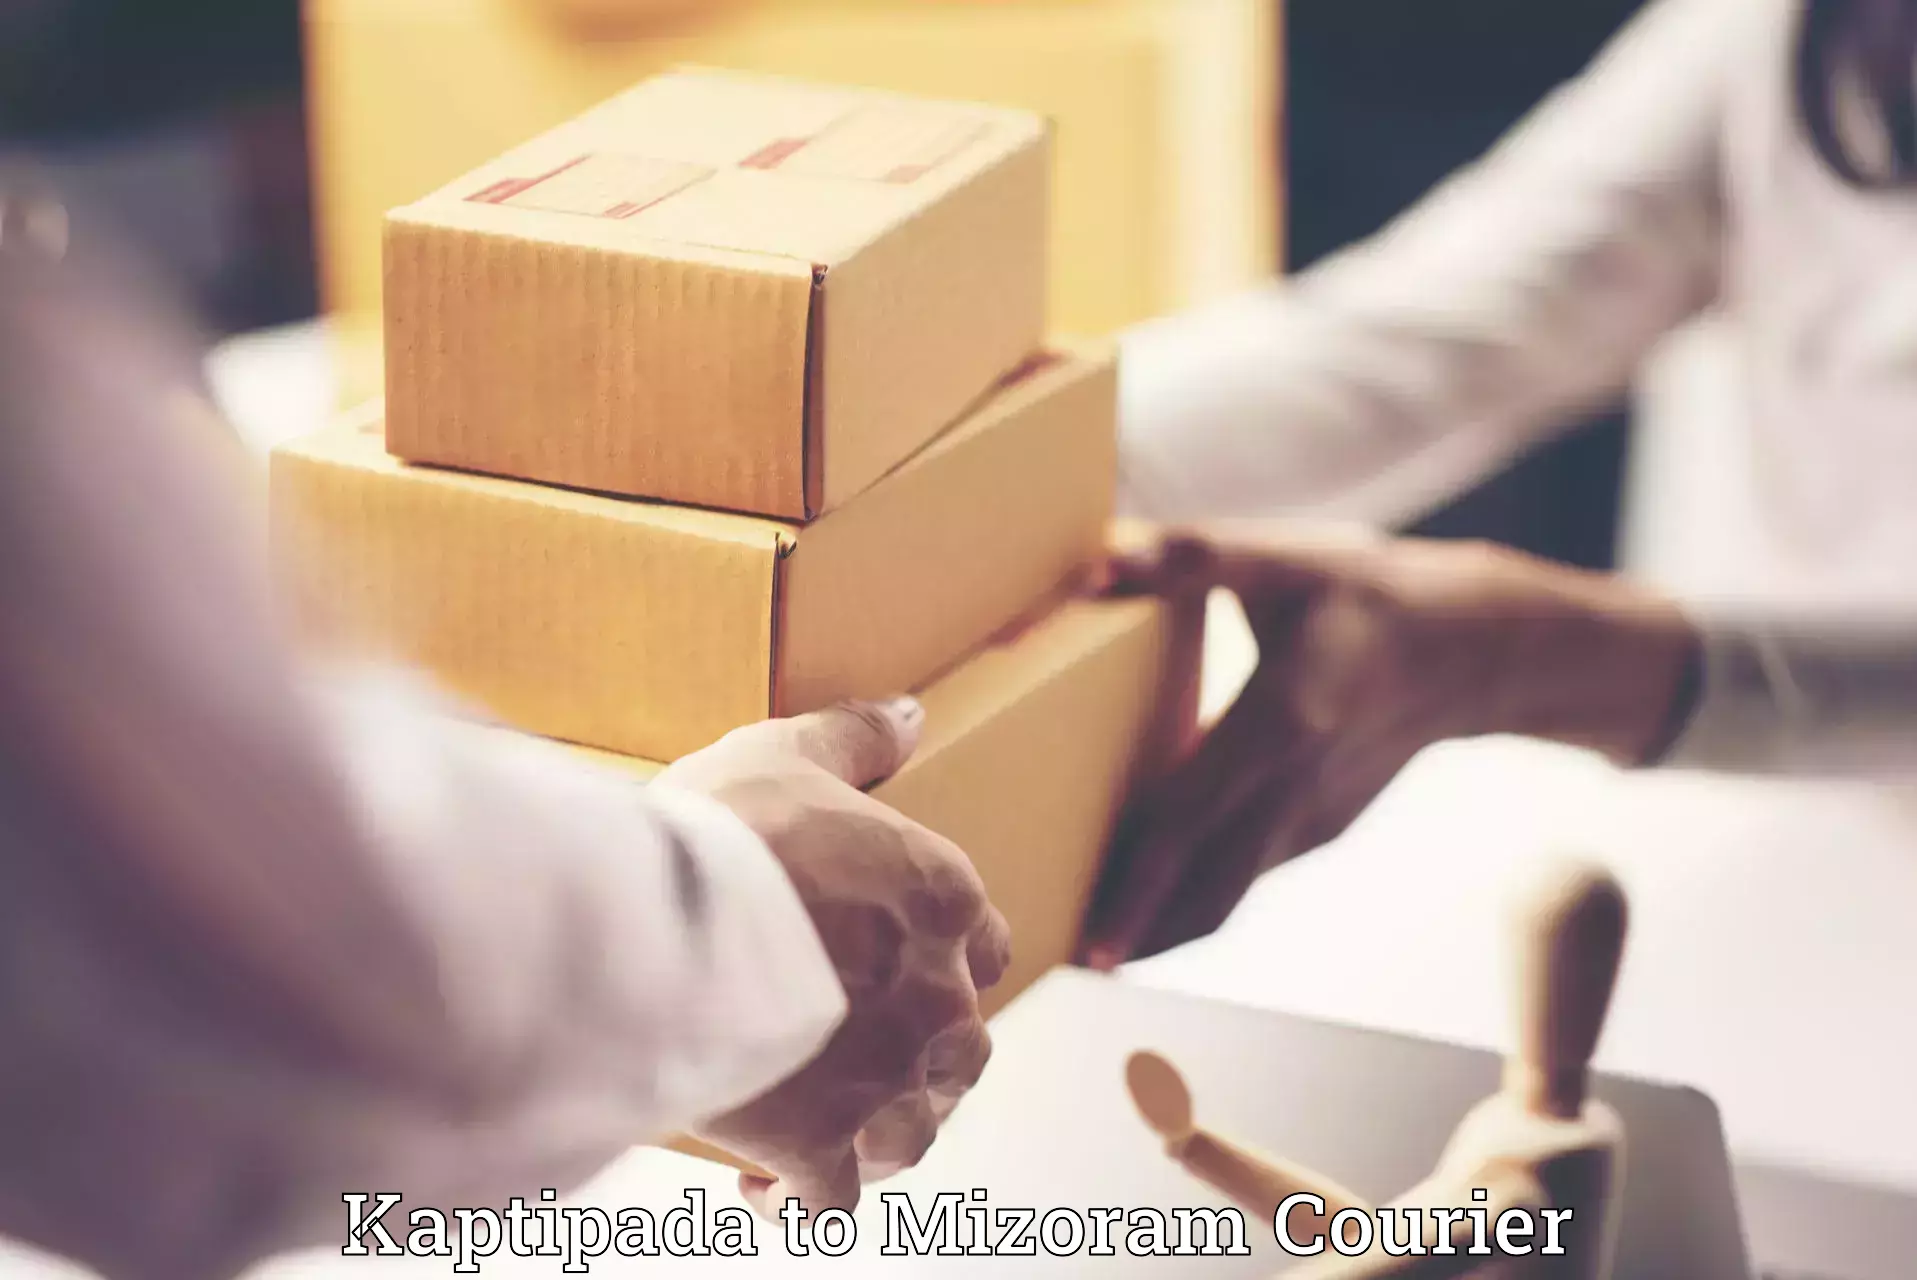 Luggage shipment specialists Kaptipada to Mizoram